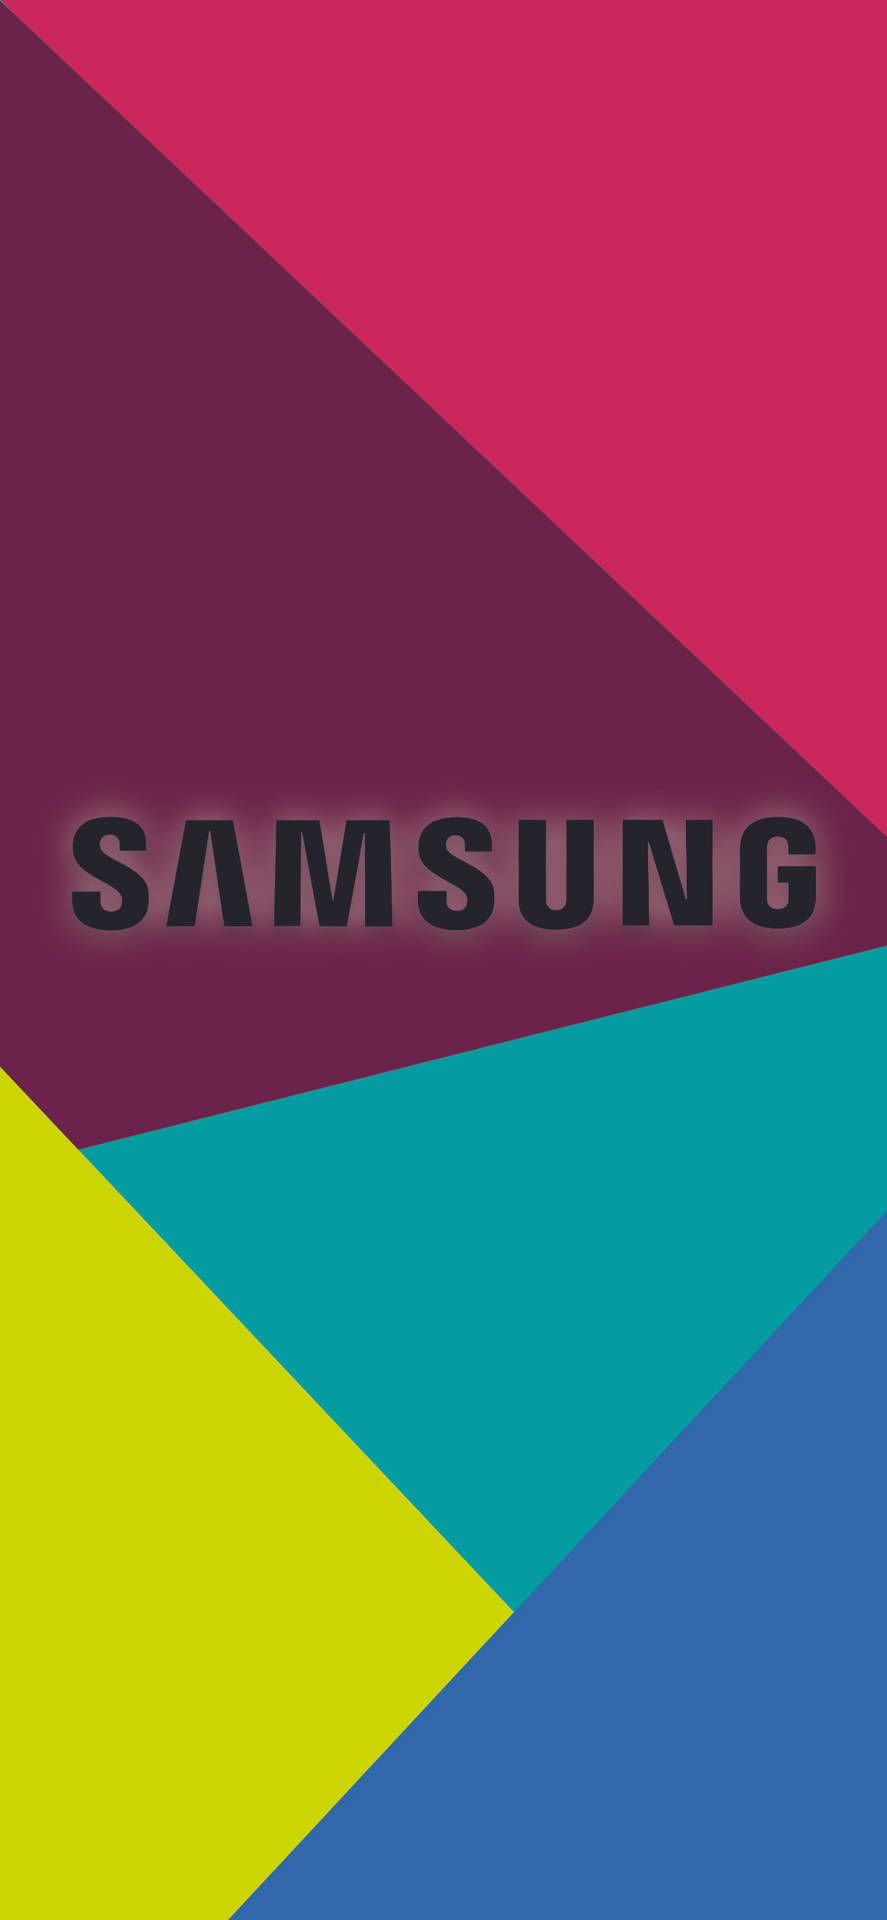 Samsung Galaxy Triangular Vector Pattern Background